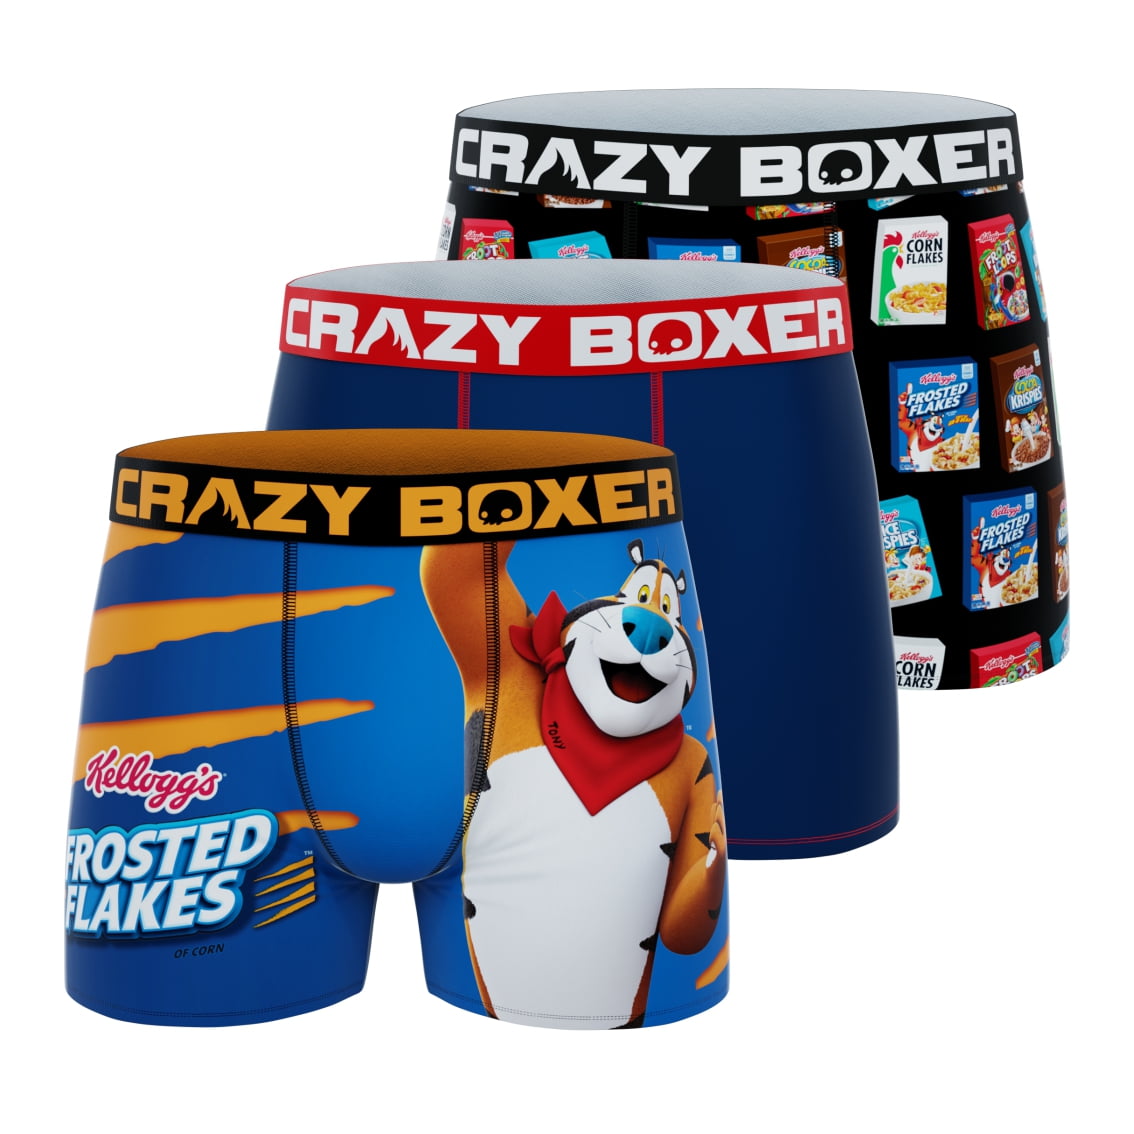 CRAZYBOXER Men's Underwear Kelloggs Stretch Soft Boxer Brief